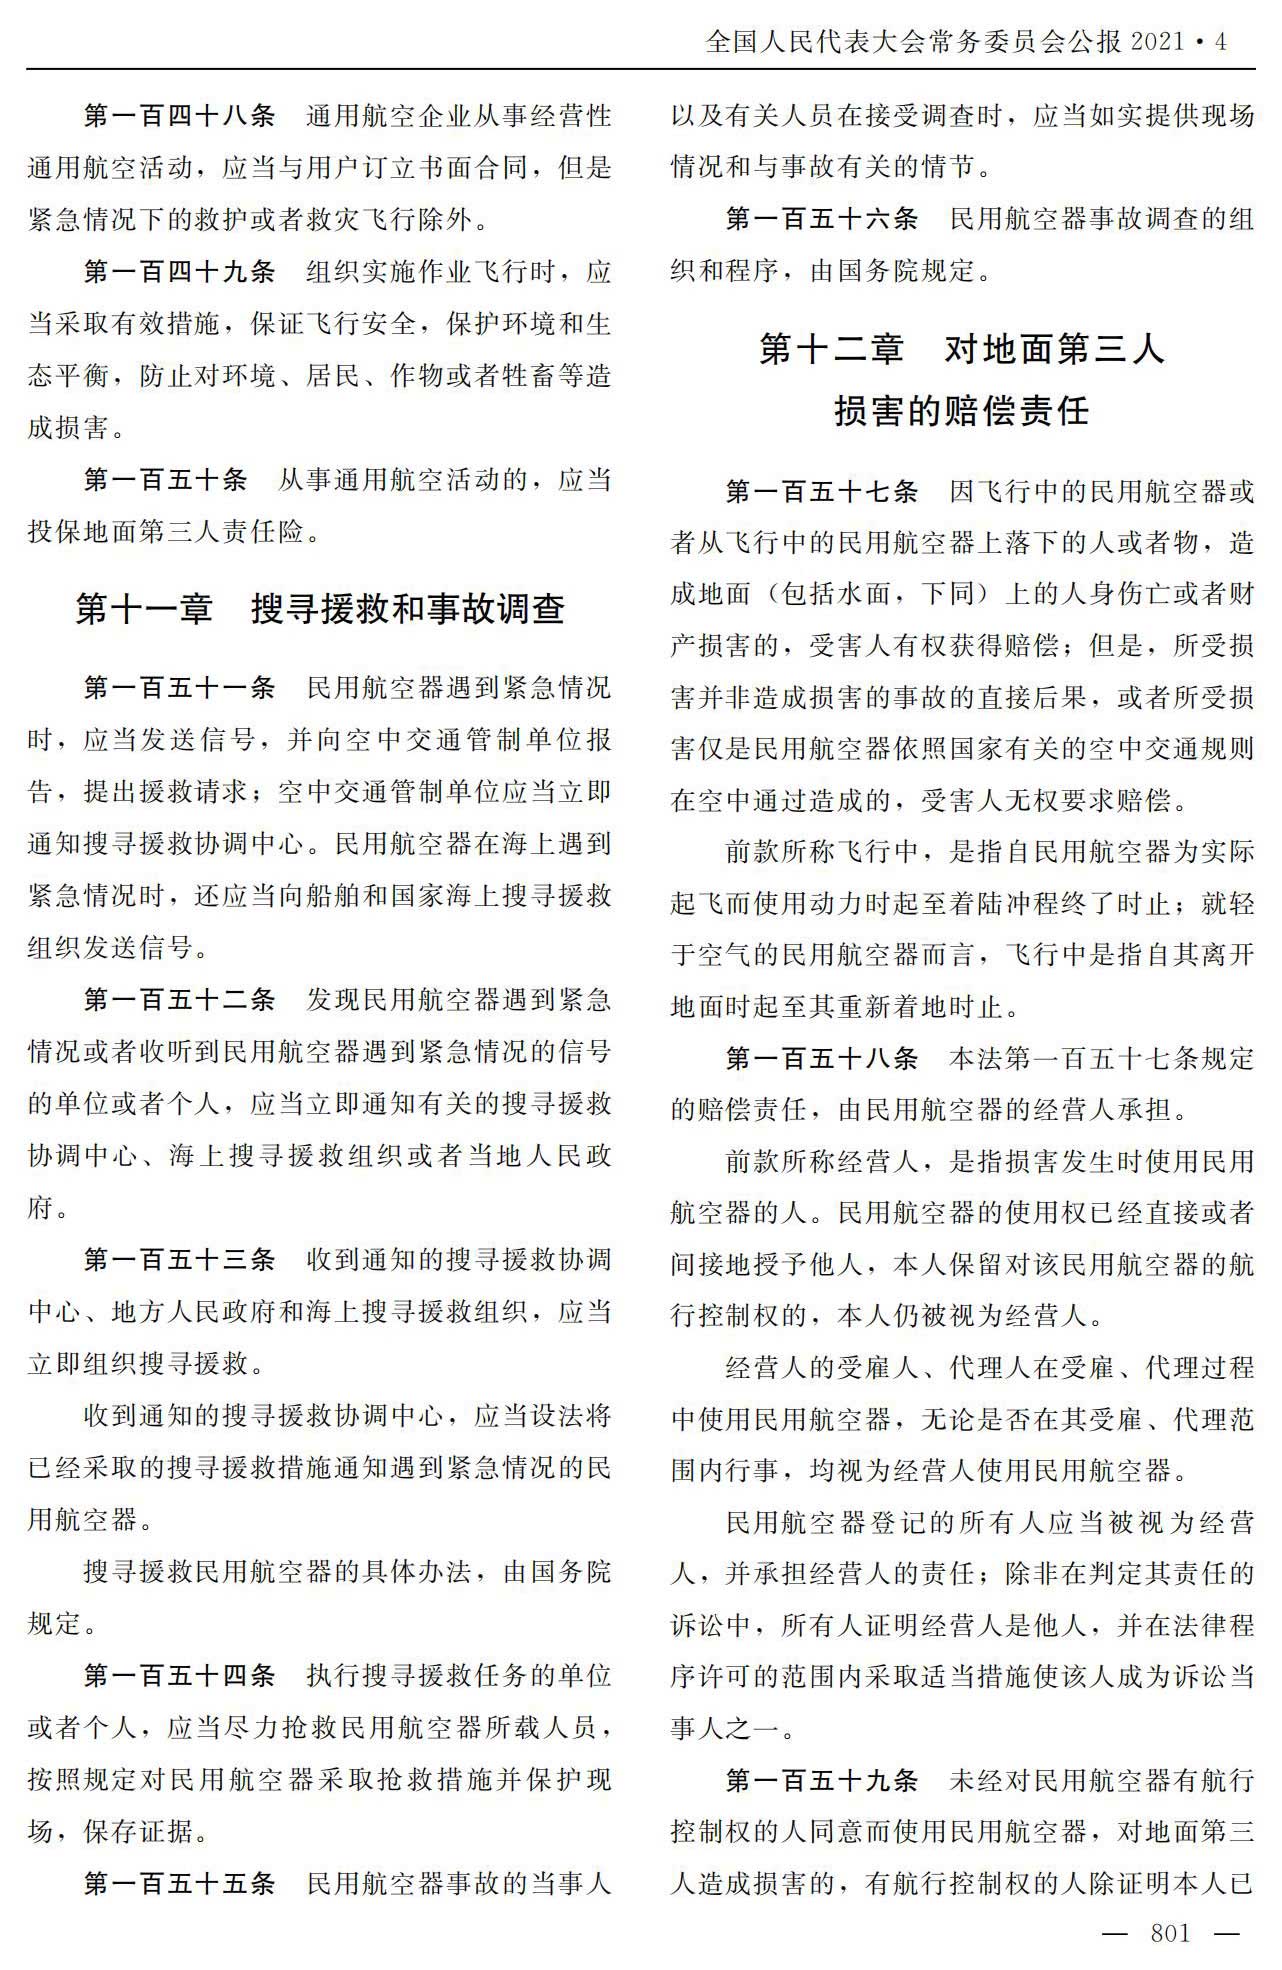 【法例法规】中华人民共和国民用航空法